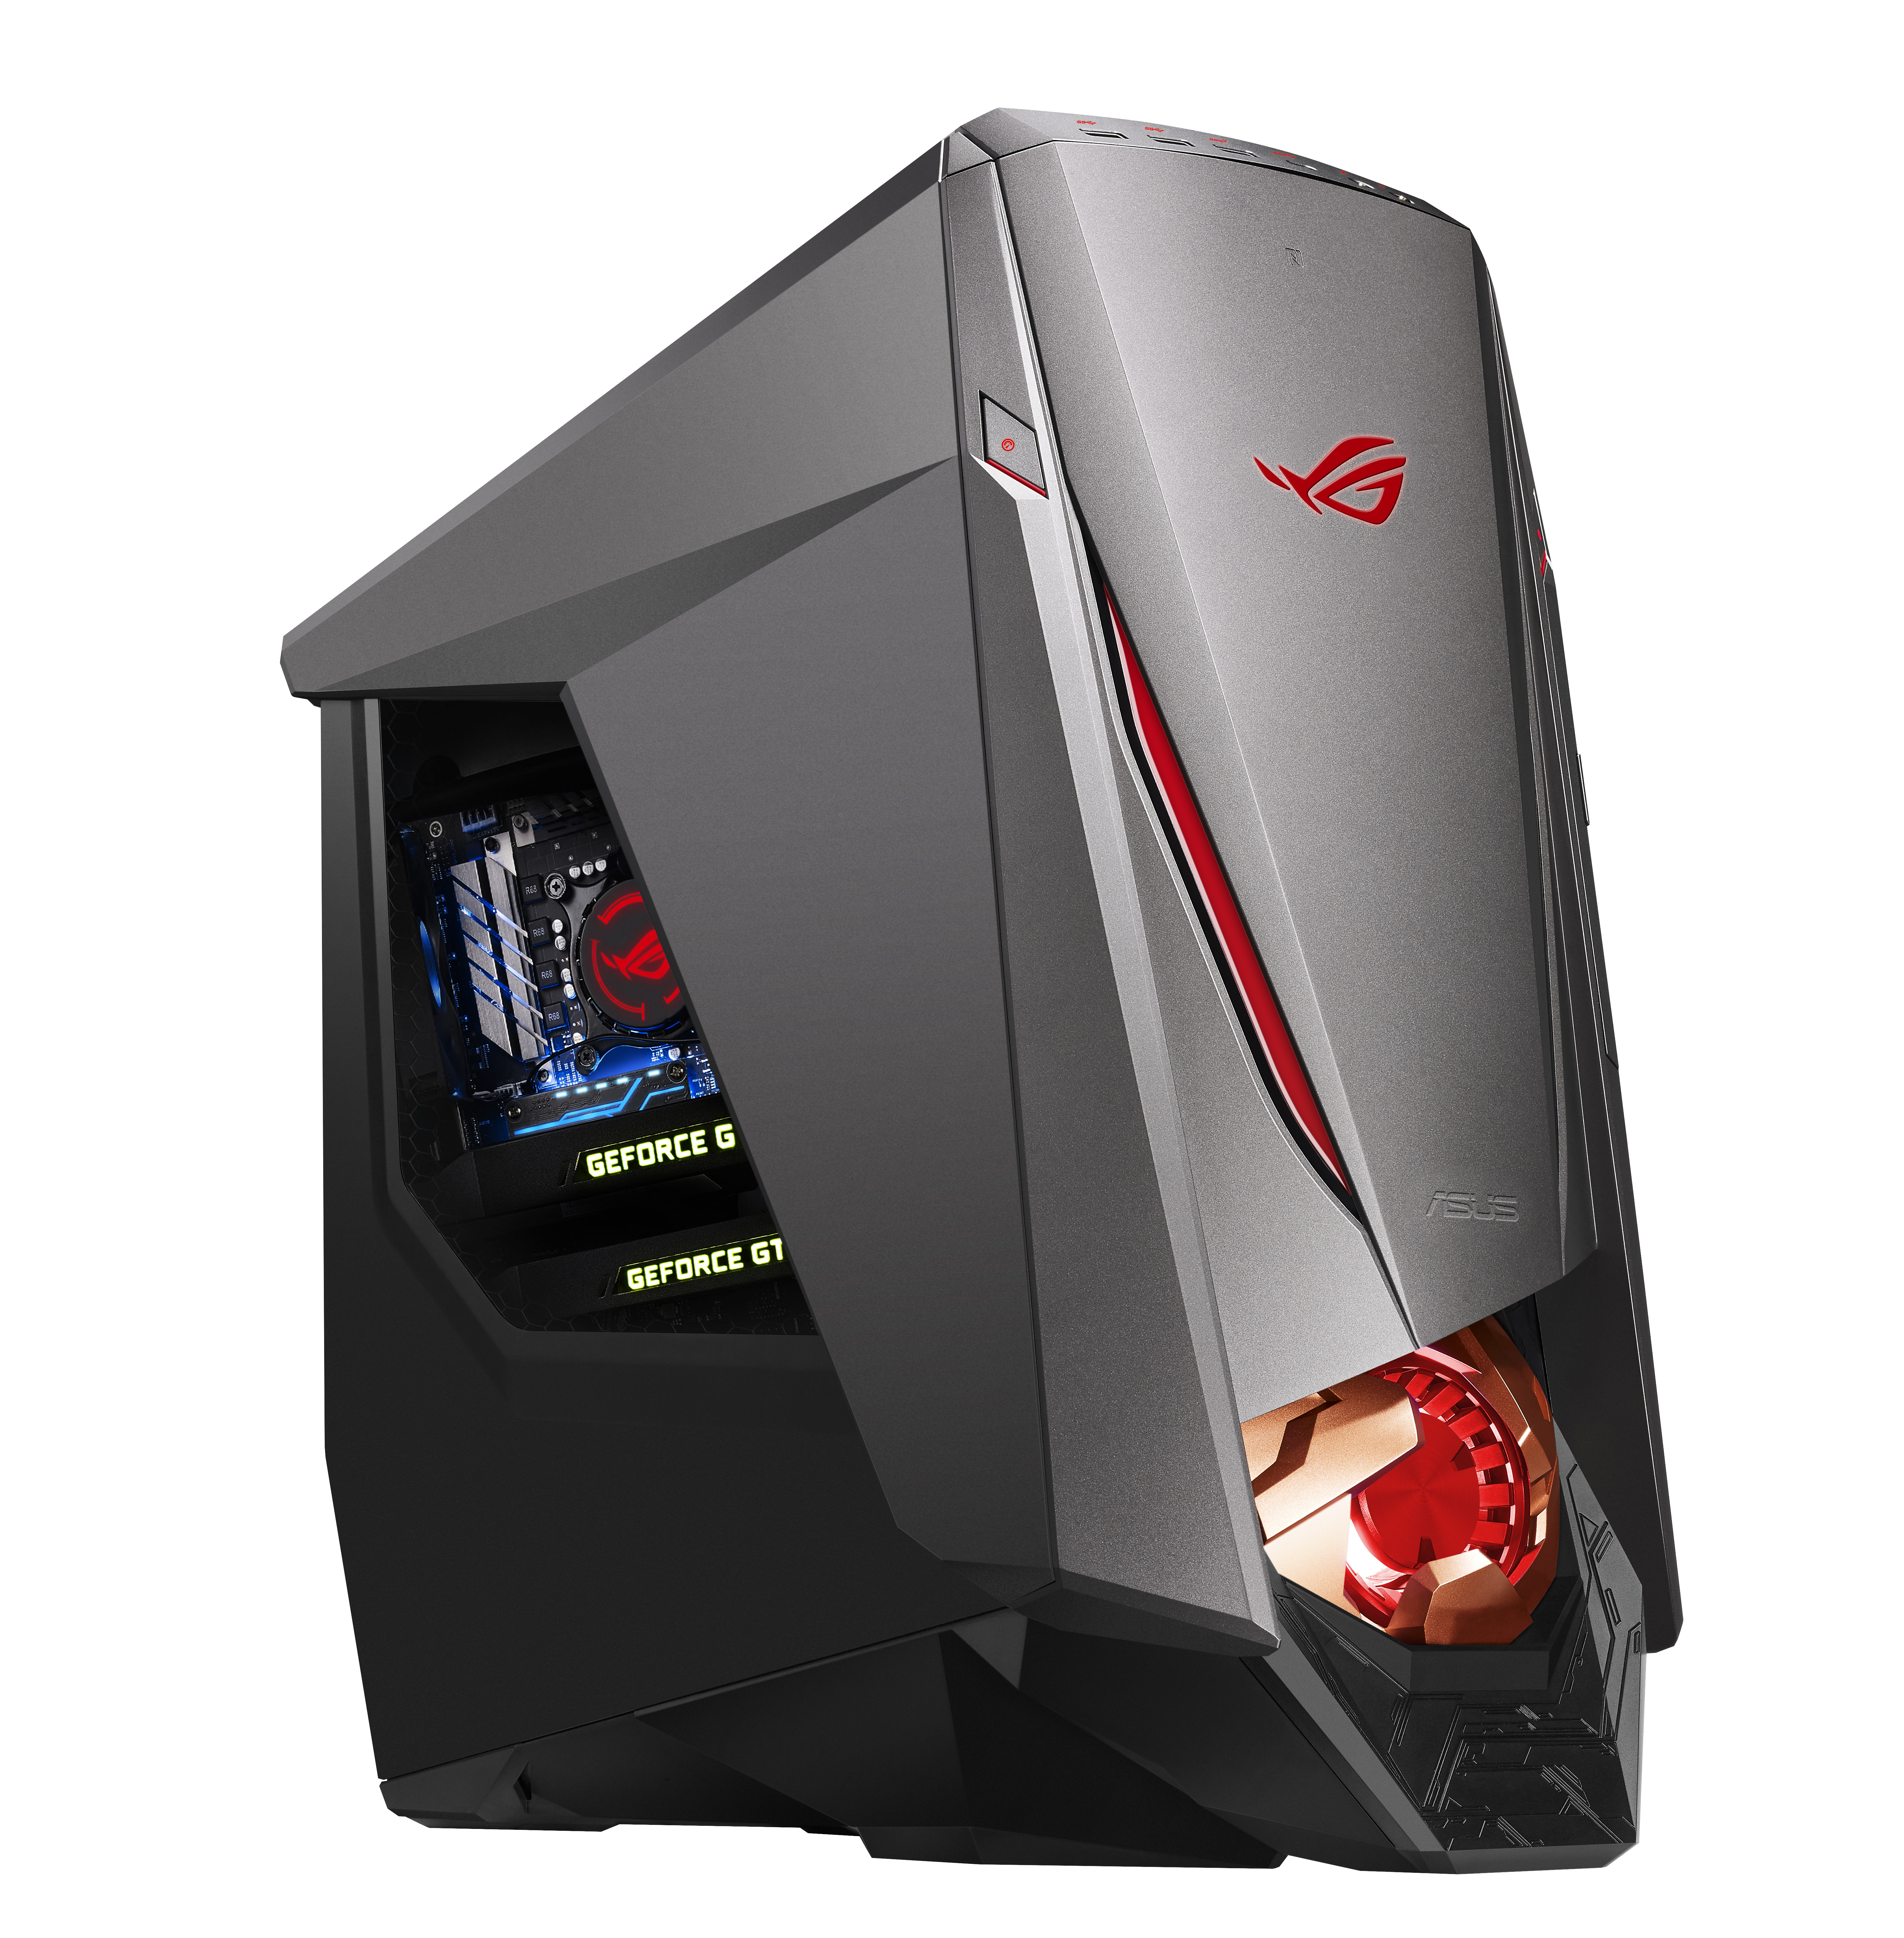  ASUS  Begins Selling the ROG  GT51 Desktop TechPowerUp